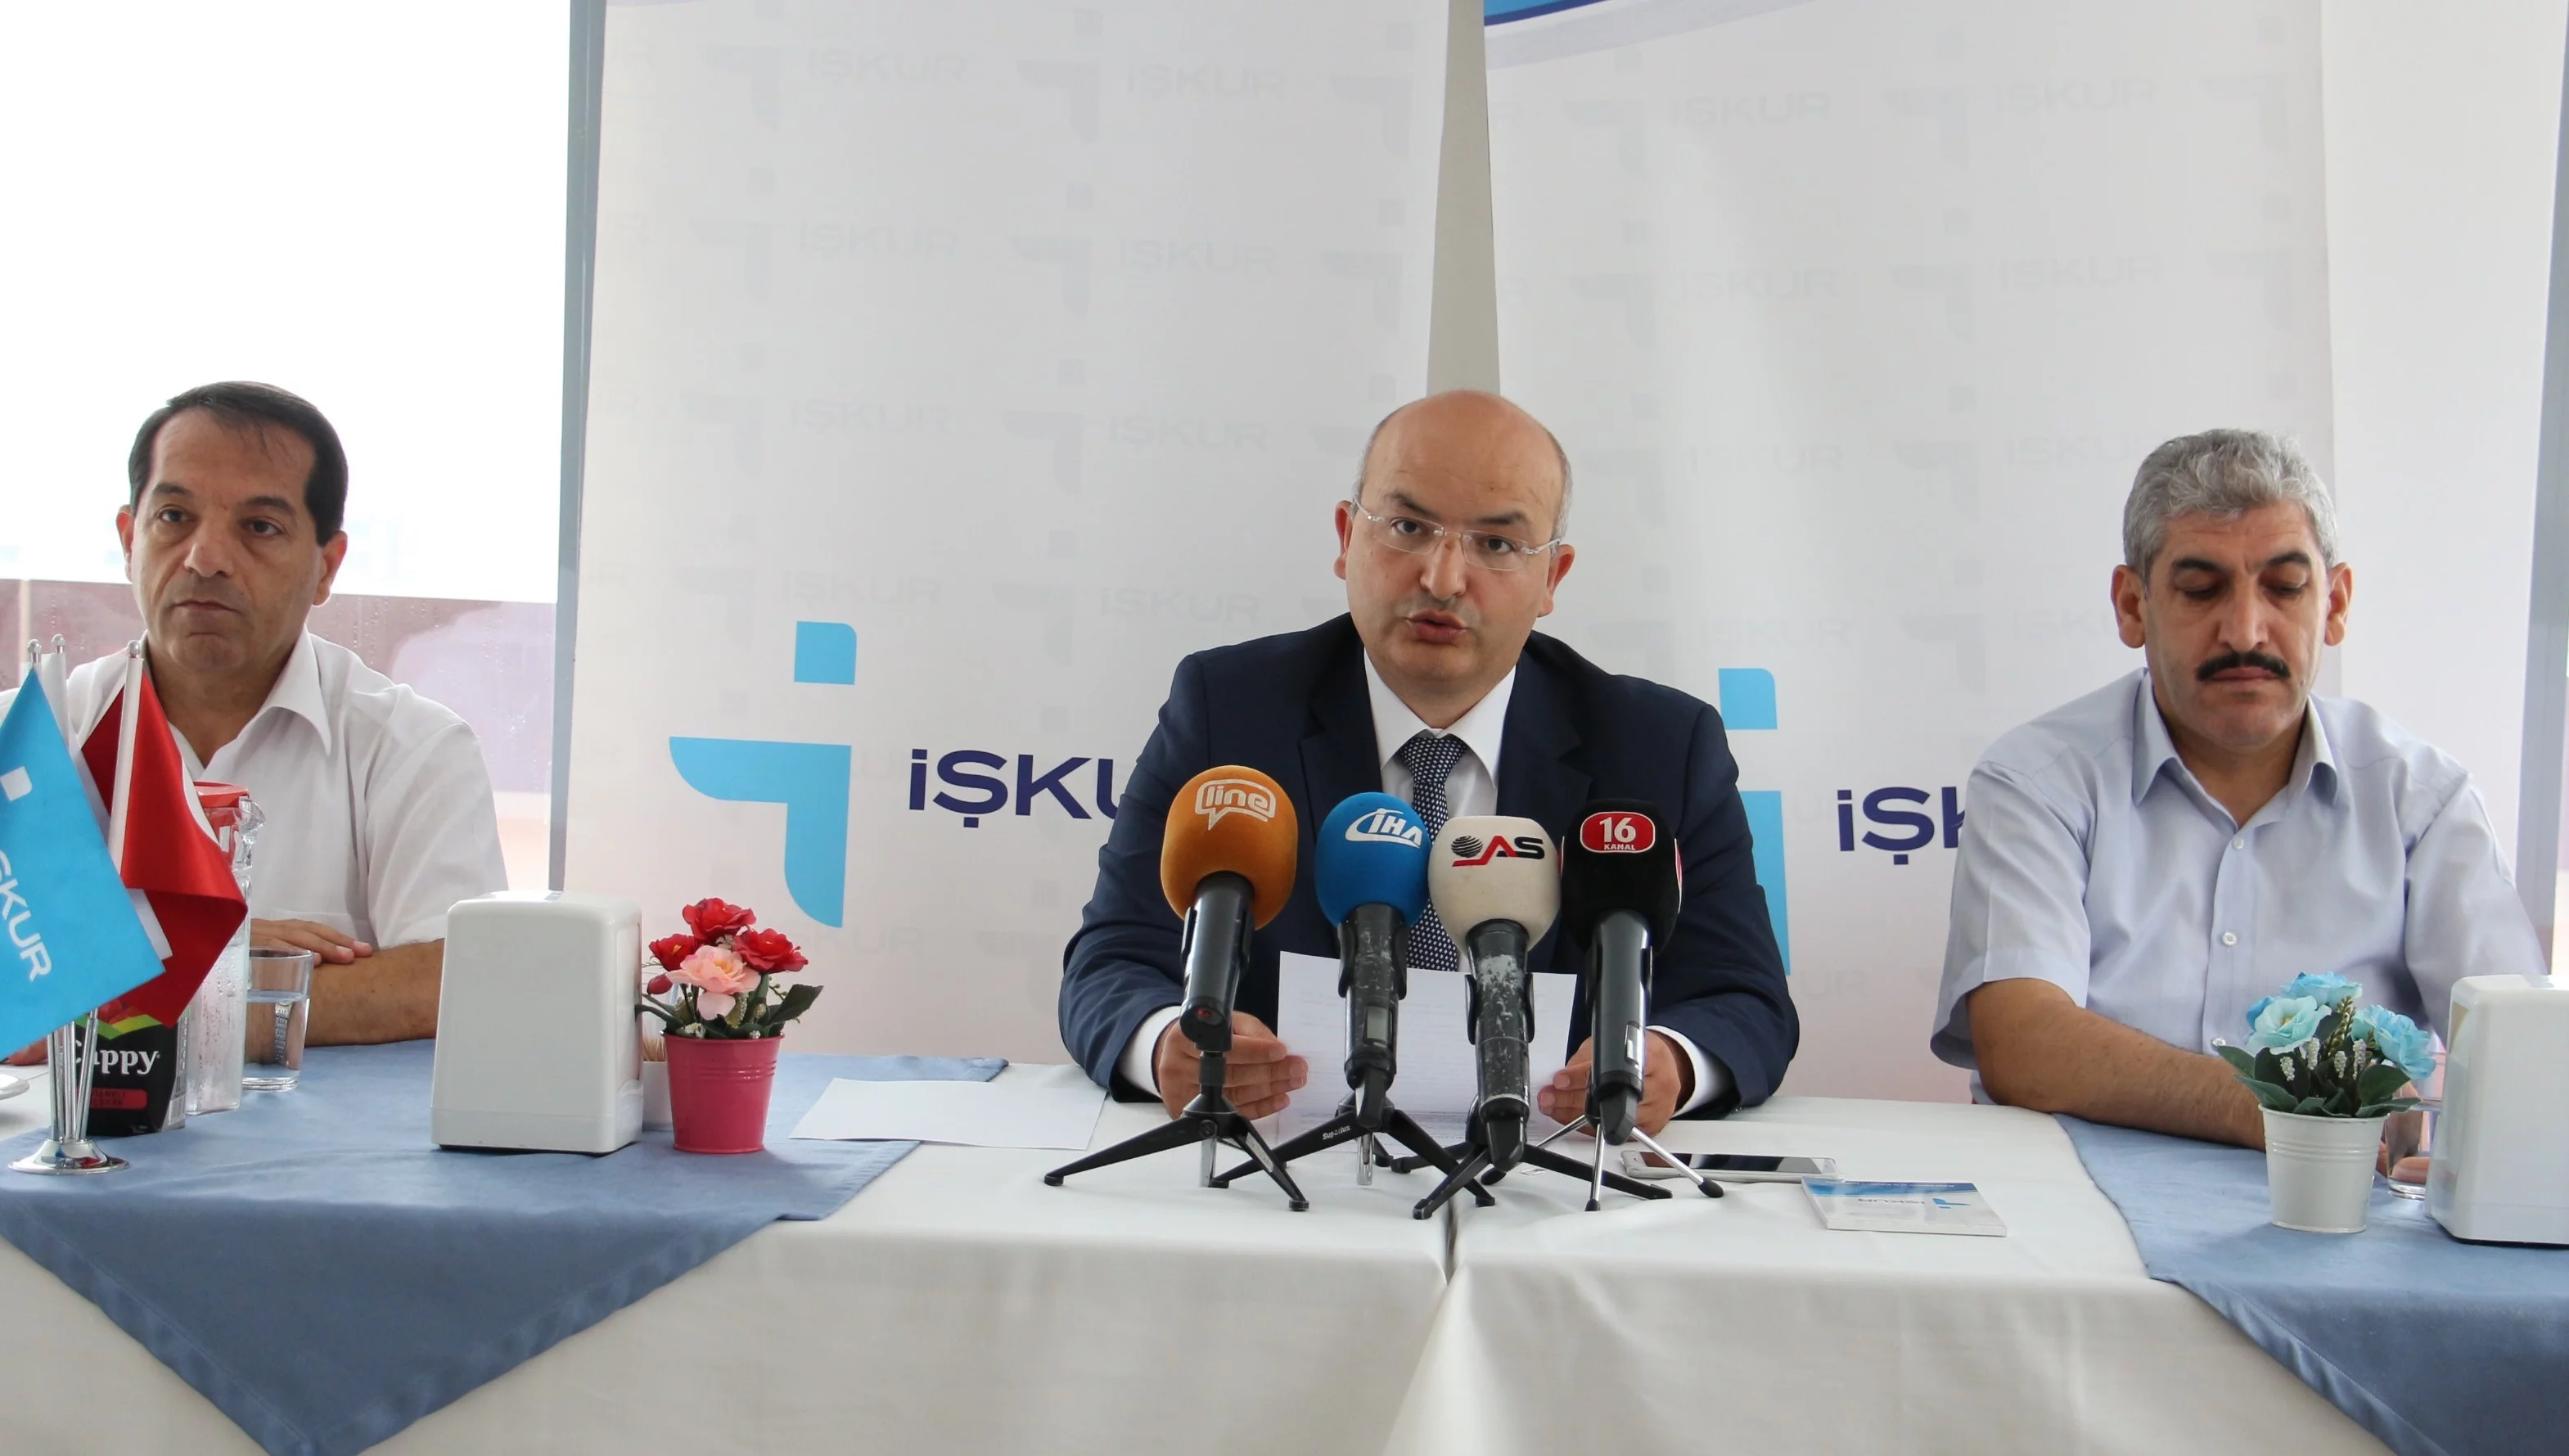 İŞKUR Müdürü Türkmen: "Bulut bilişim ve siber güvenlik uzmanları yetiştireceğiz"